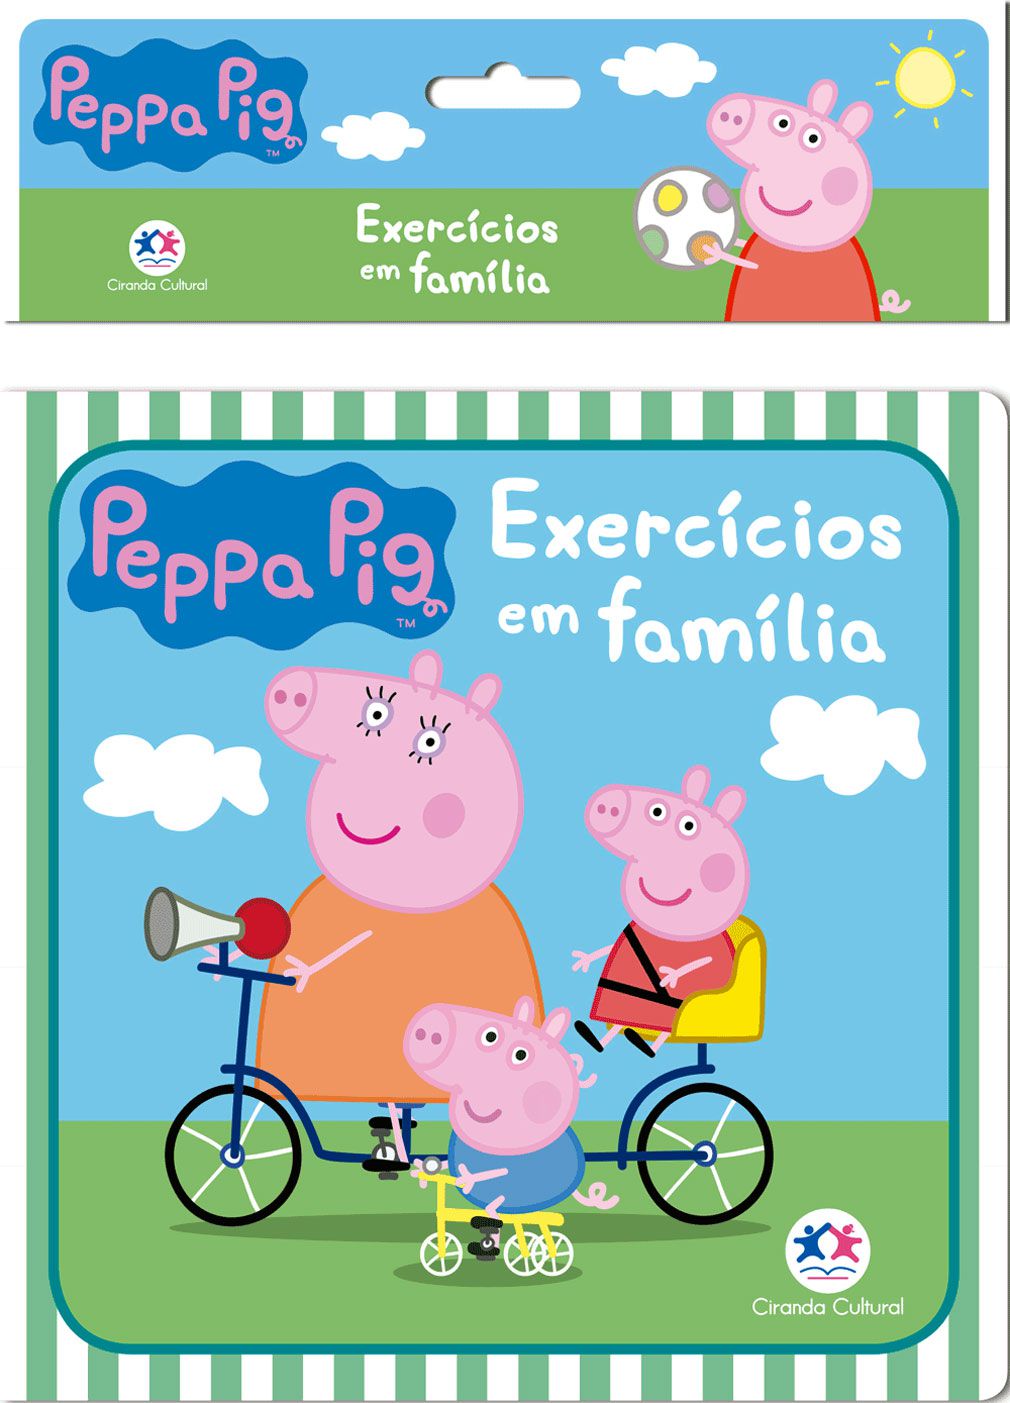 Livro: 365 Atividades e Desenhos Para Colorir - Peppa Pig - Atacado de  Livros